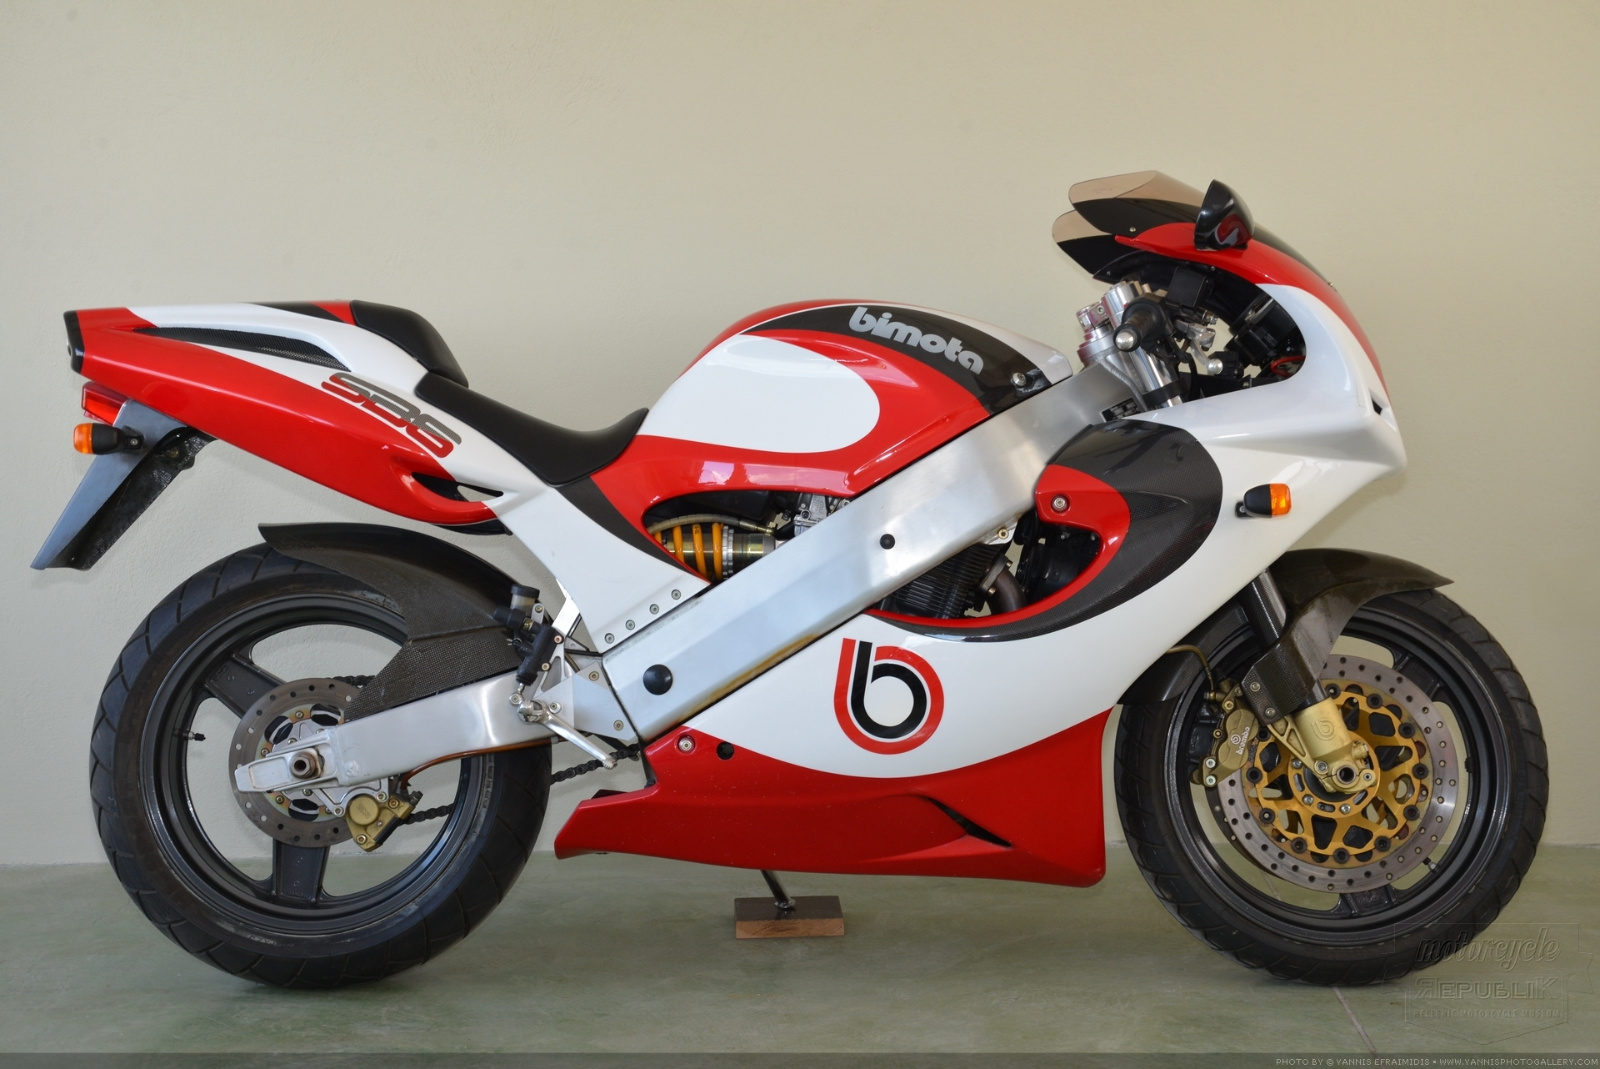 Ducati начала 95-й год своей истории: от радиоприемника до superleggera v4 / мотогонки.ру